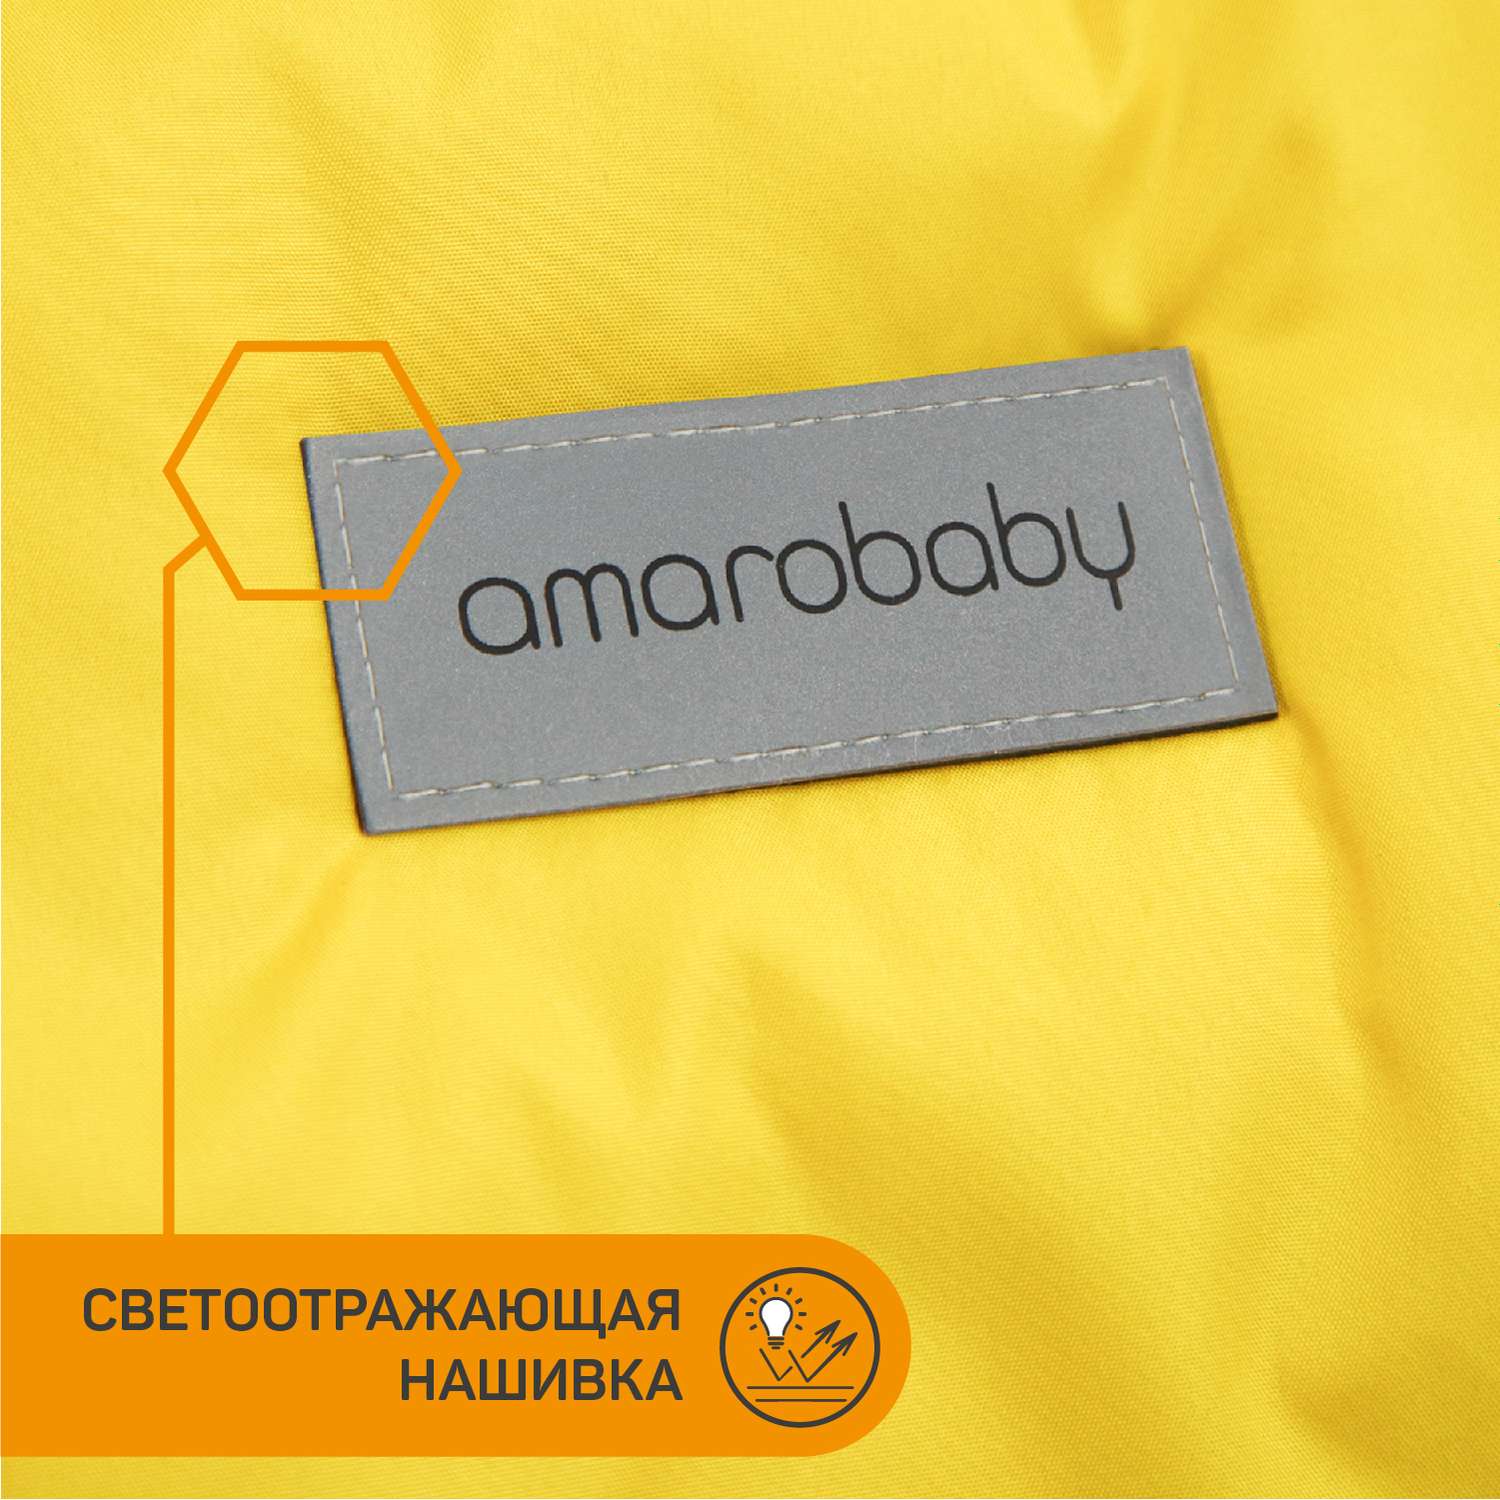 Конверт зимний AmaroBaby меховой Snowy Travel Желтый 105 см - фото 11